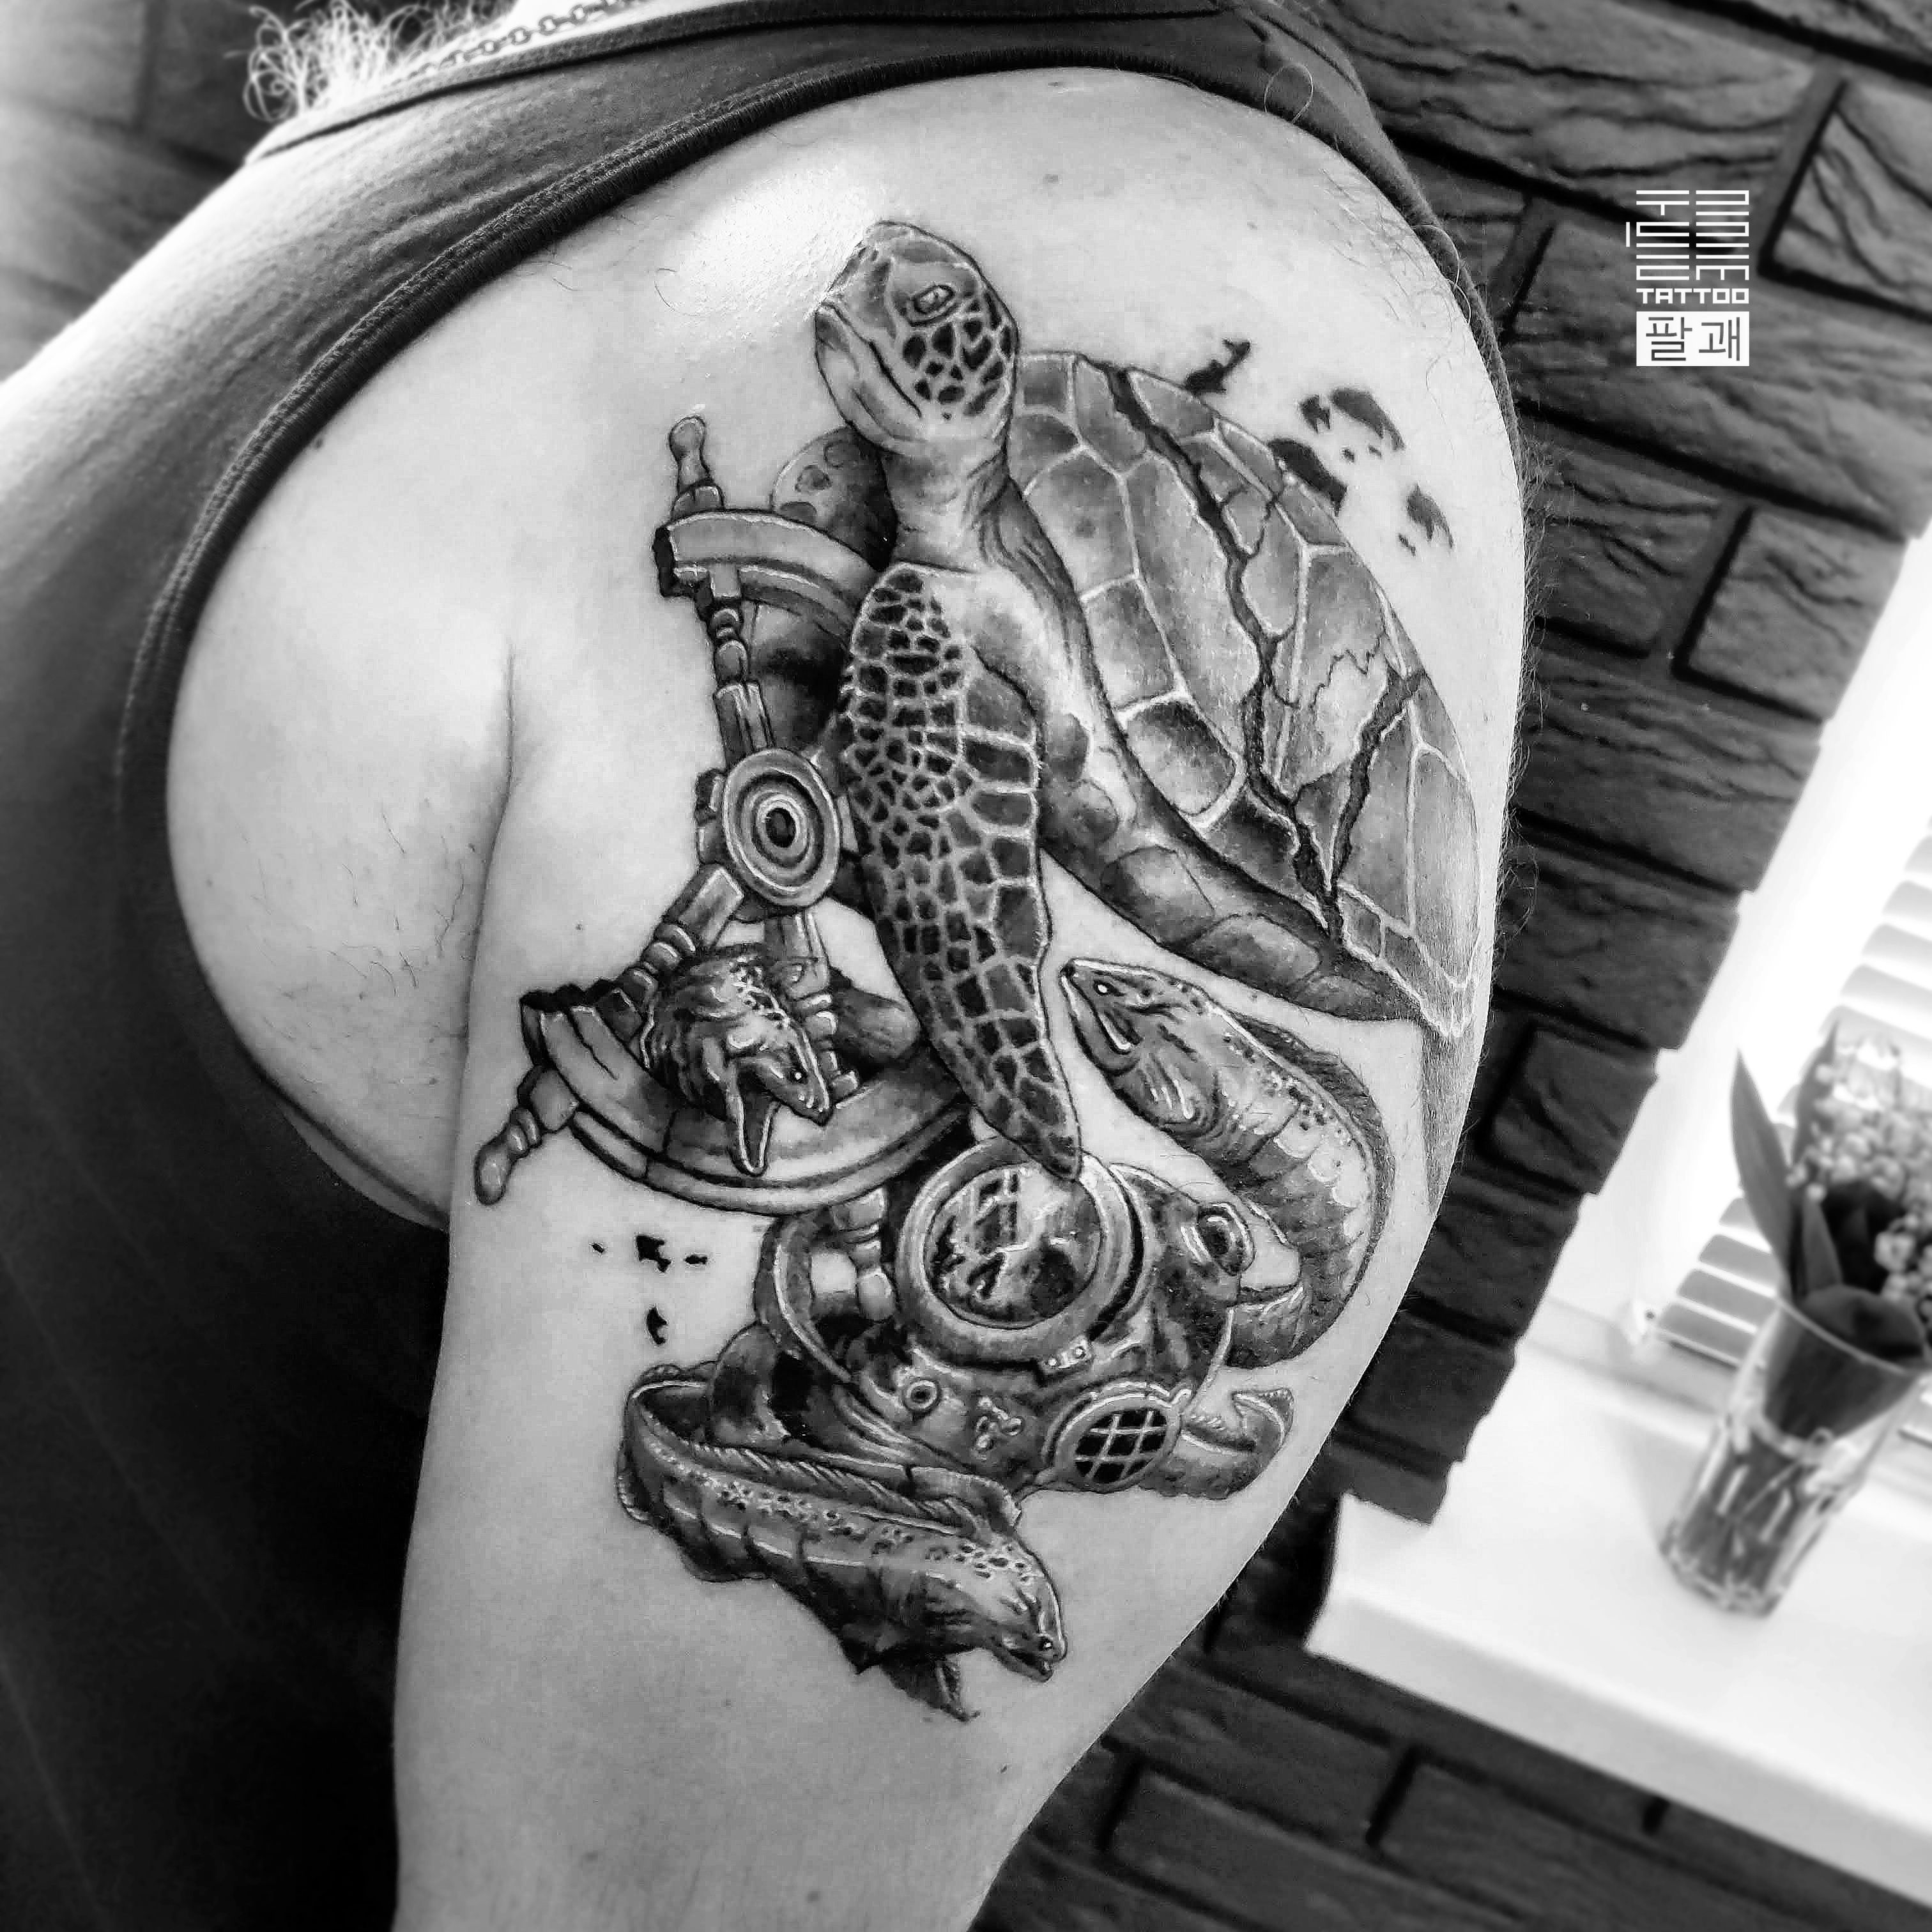 Skull and Leopard Tattoo - Best Tattoo Ideas Gallery